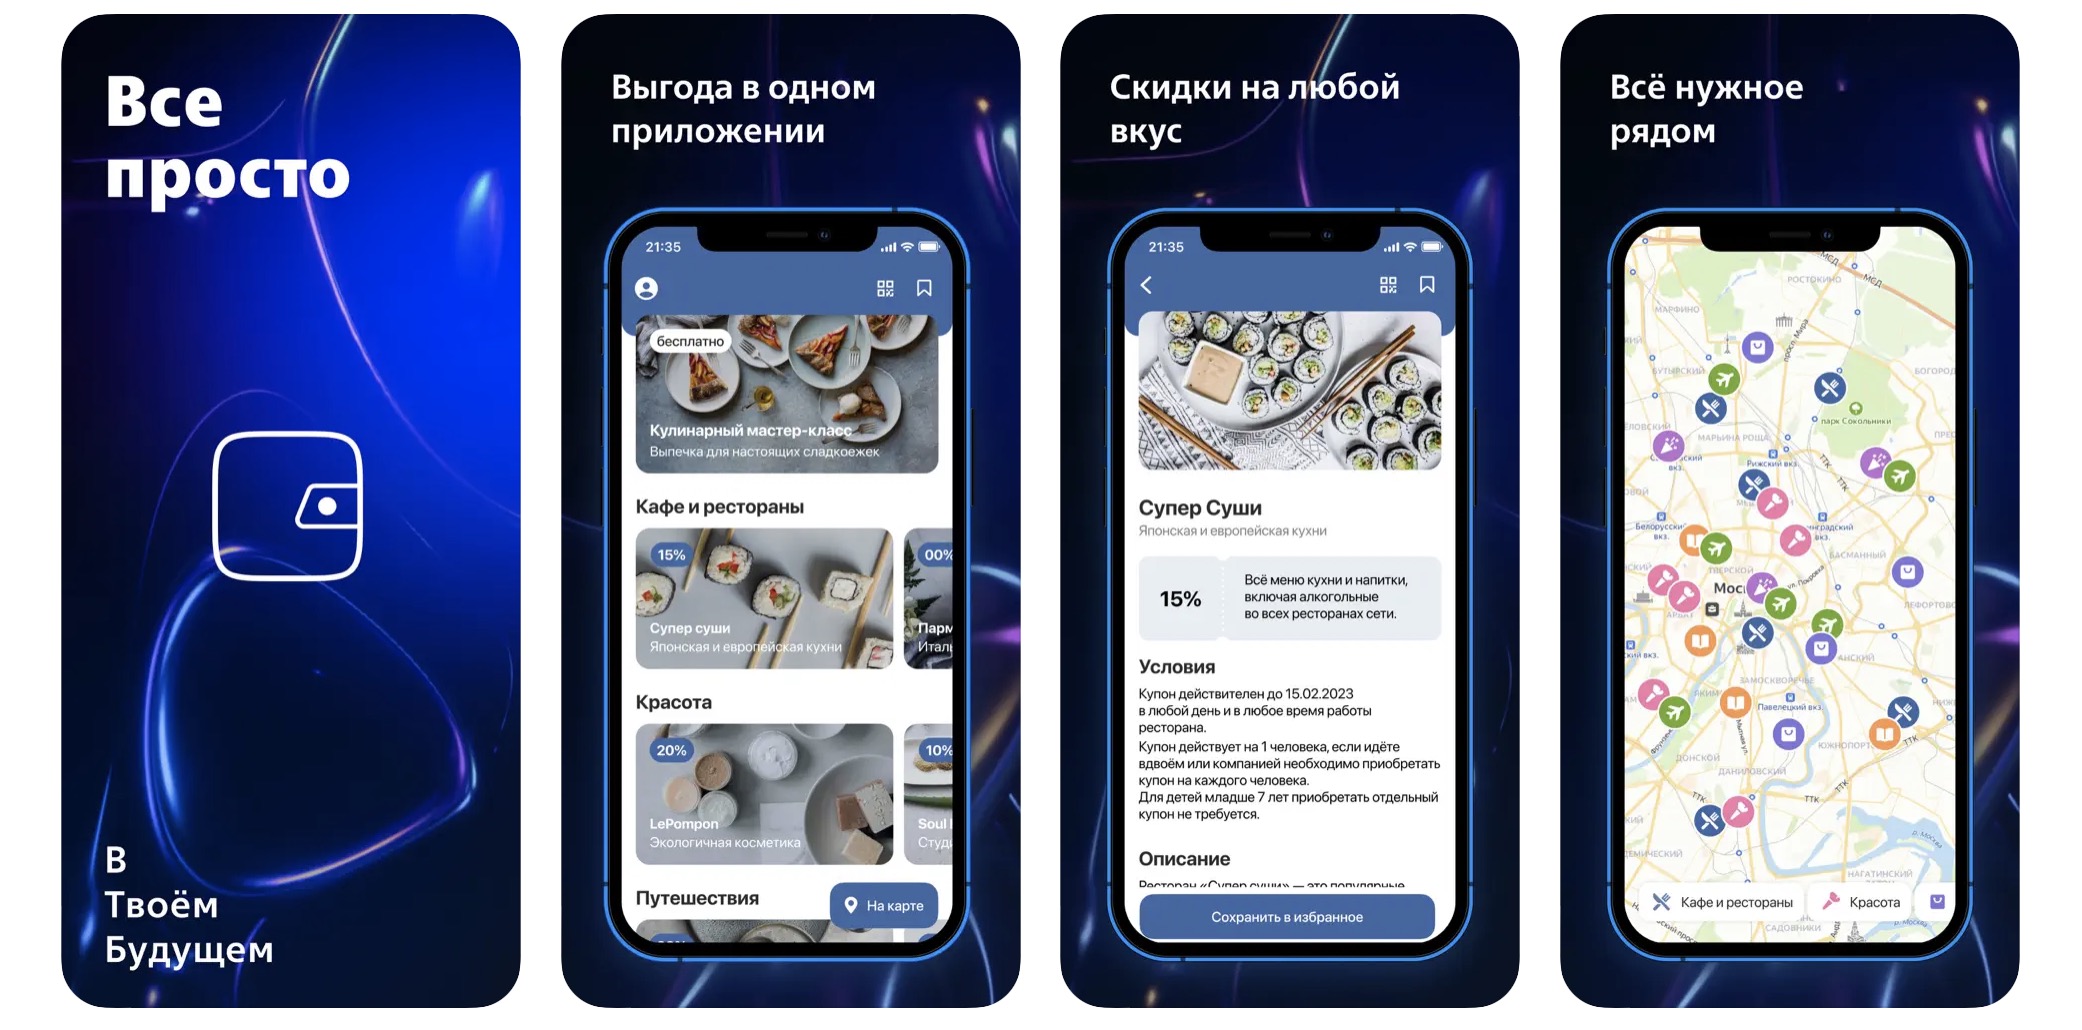 ВТБ выпустил новое банковское приложение для iOS